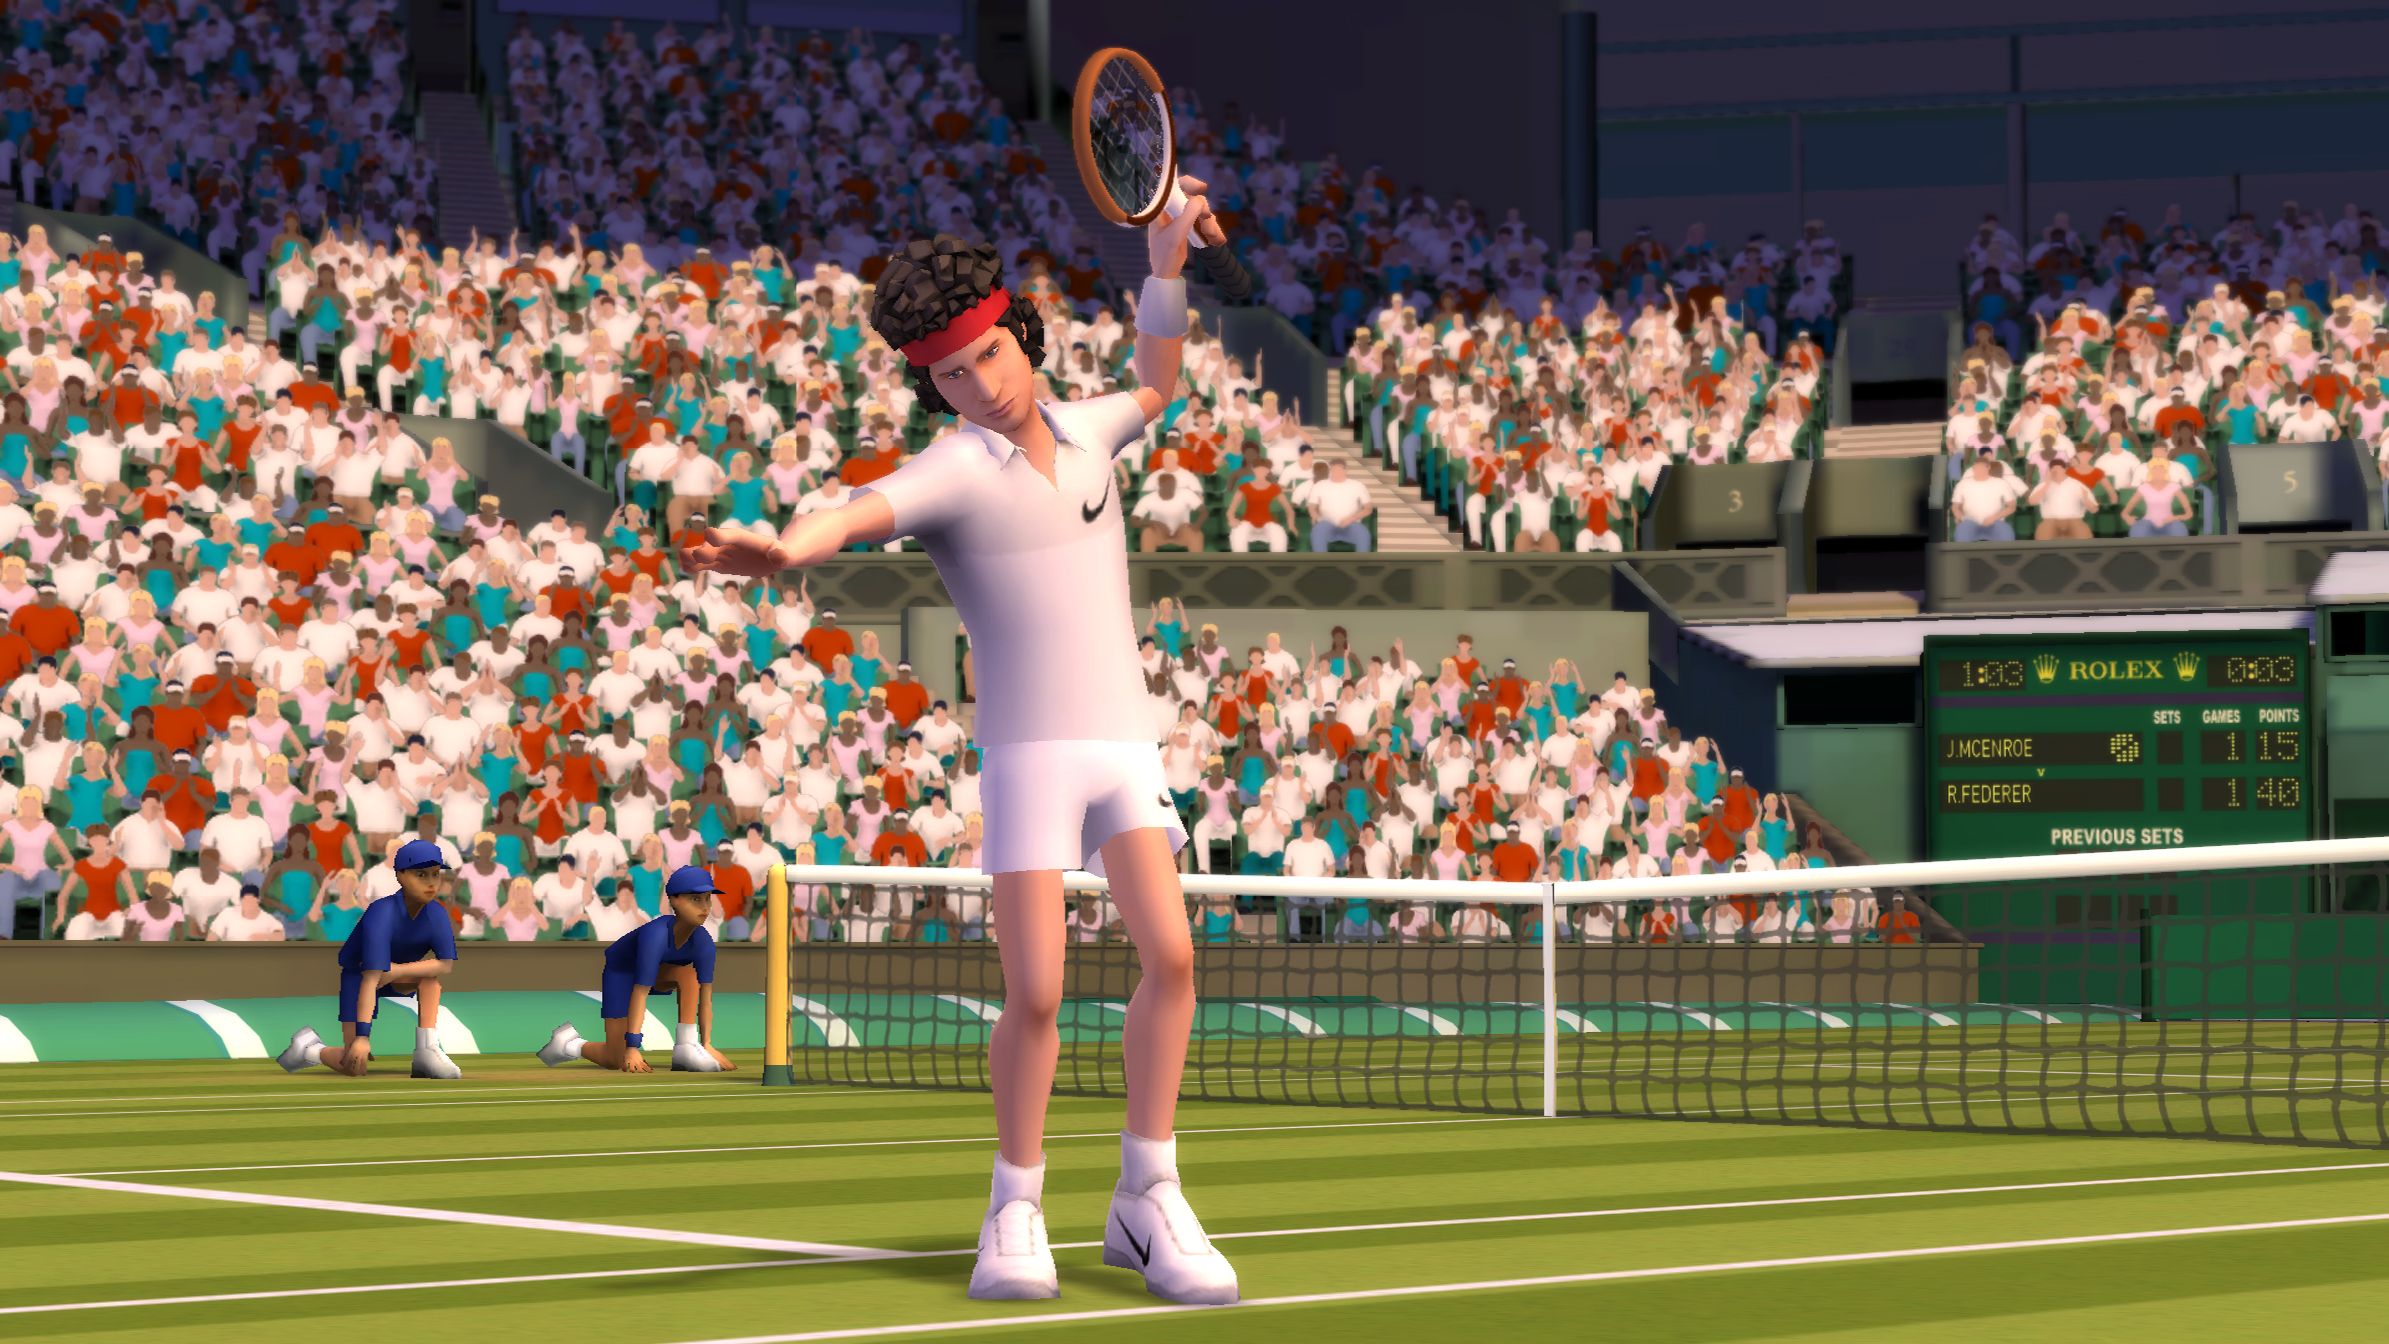 Партия игры в теннисе. Grand Slam Tennis. Теннис игра аристократов. Grand Slam Tennis Sega. Игра на Xbox 360 Grand Slam Tennis 2.